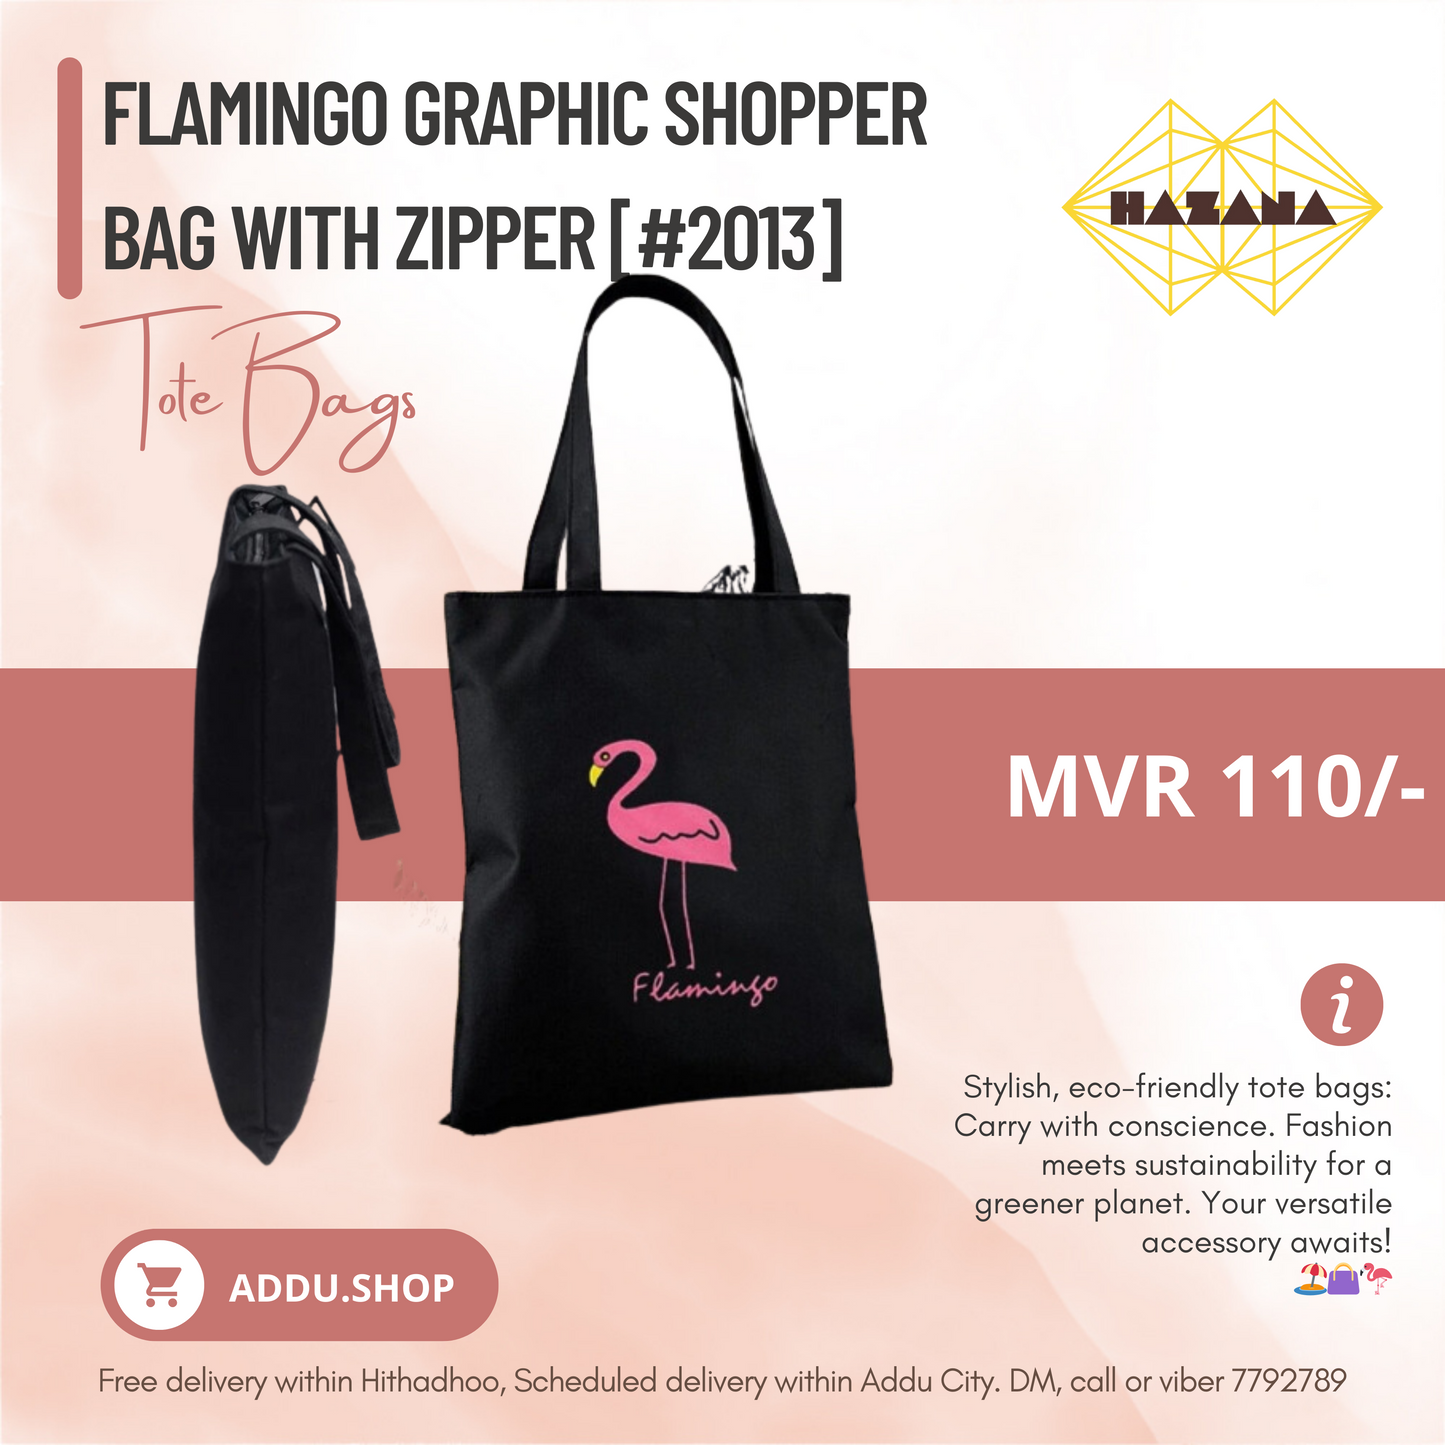 Flamingo Graphic Shopper Bag with Zipper [#2013]